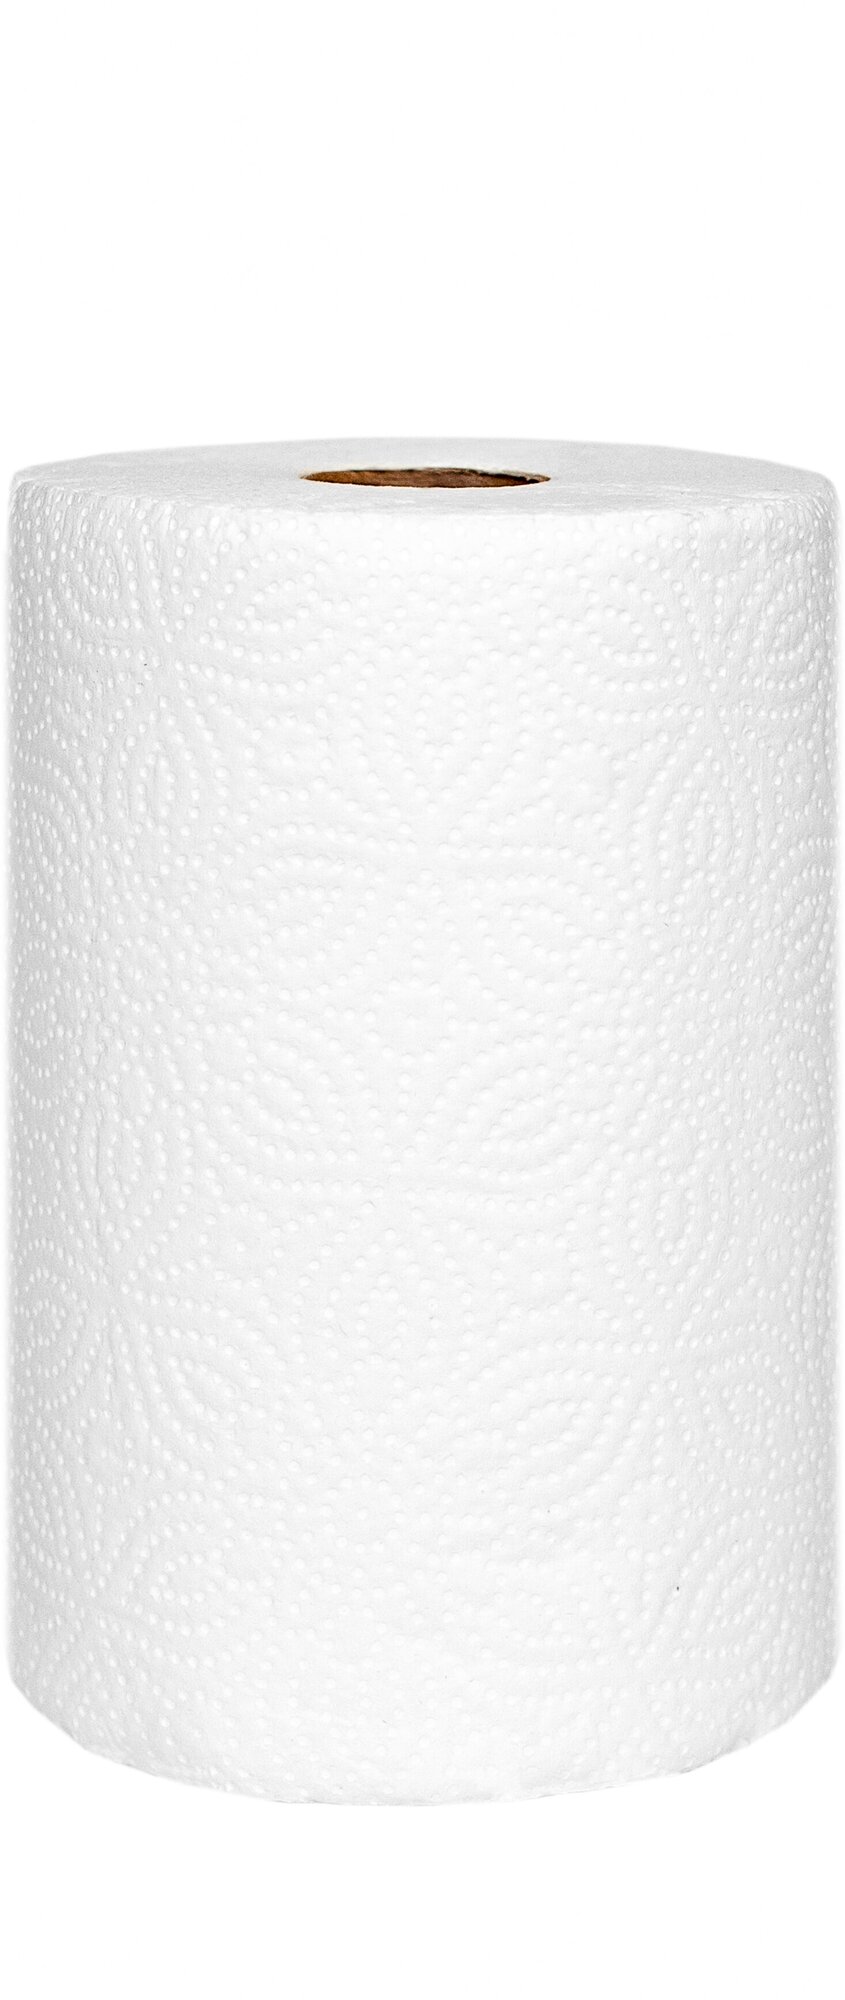 Бумажные полотенца Belux 3 в 1 Мега упаковка(35м) белые